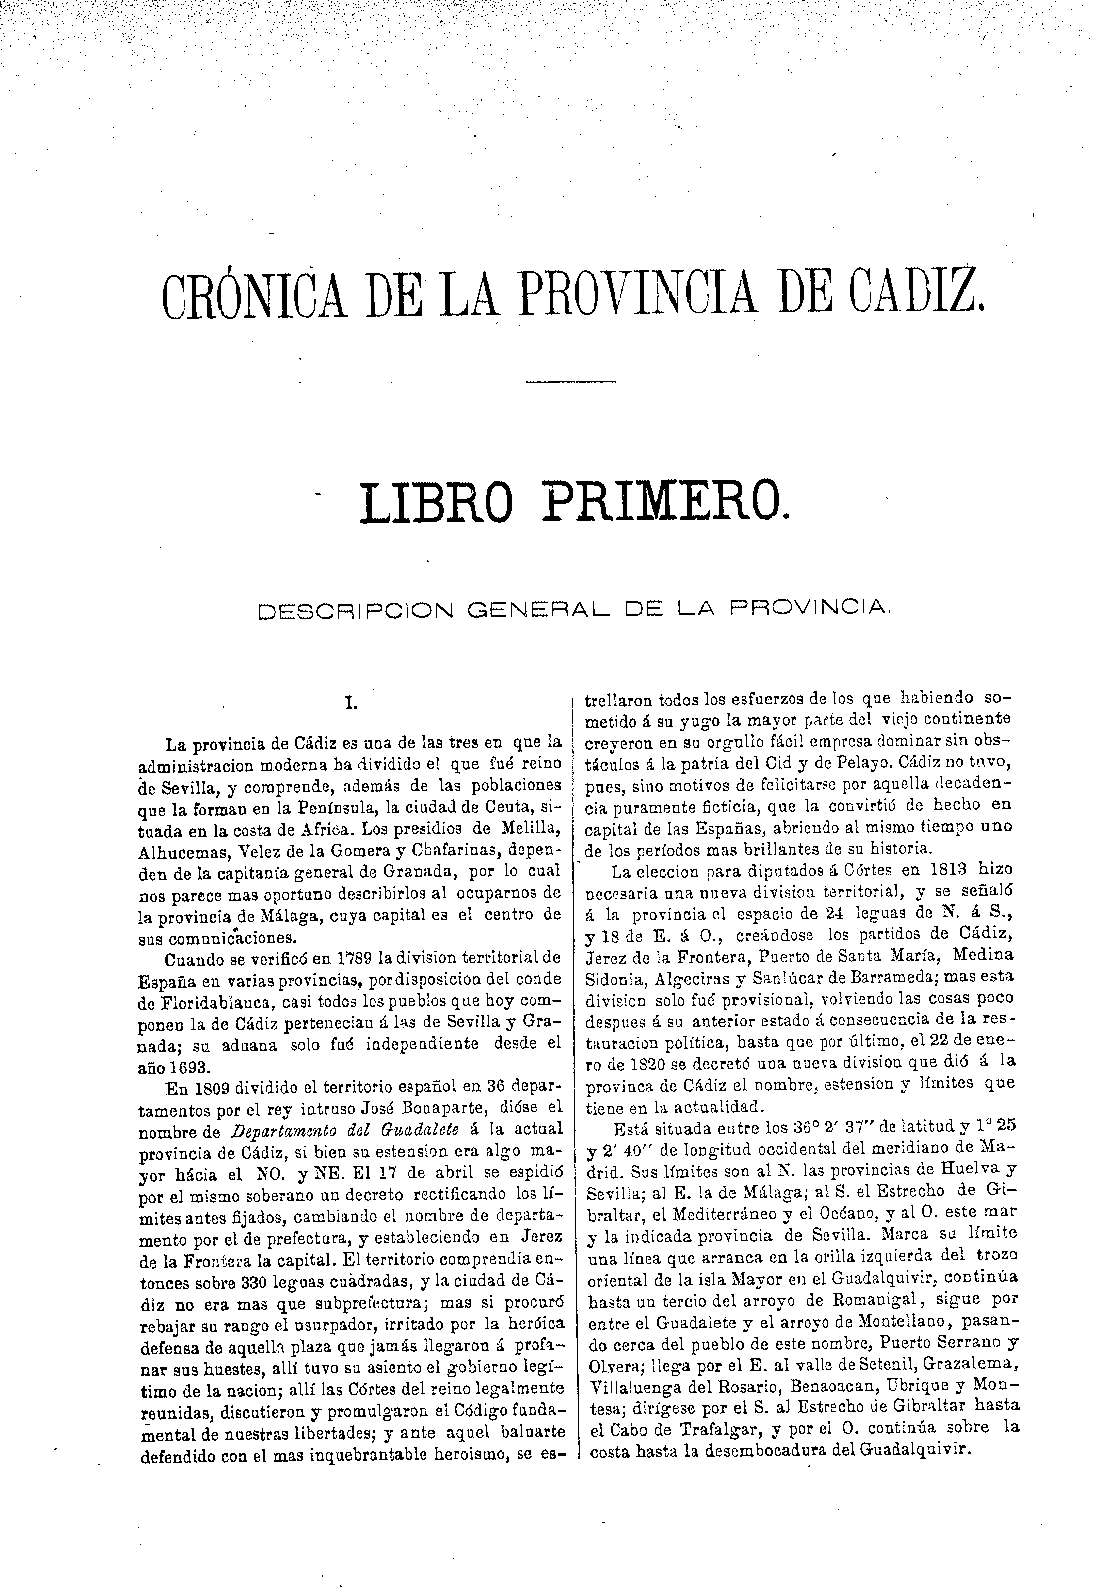 Crónica de la provincia de Cadiz. Libro primero. Descripcion general de la provincia